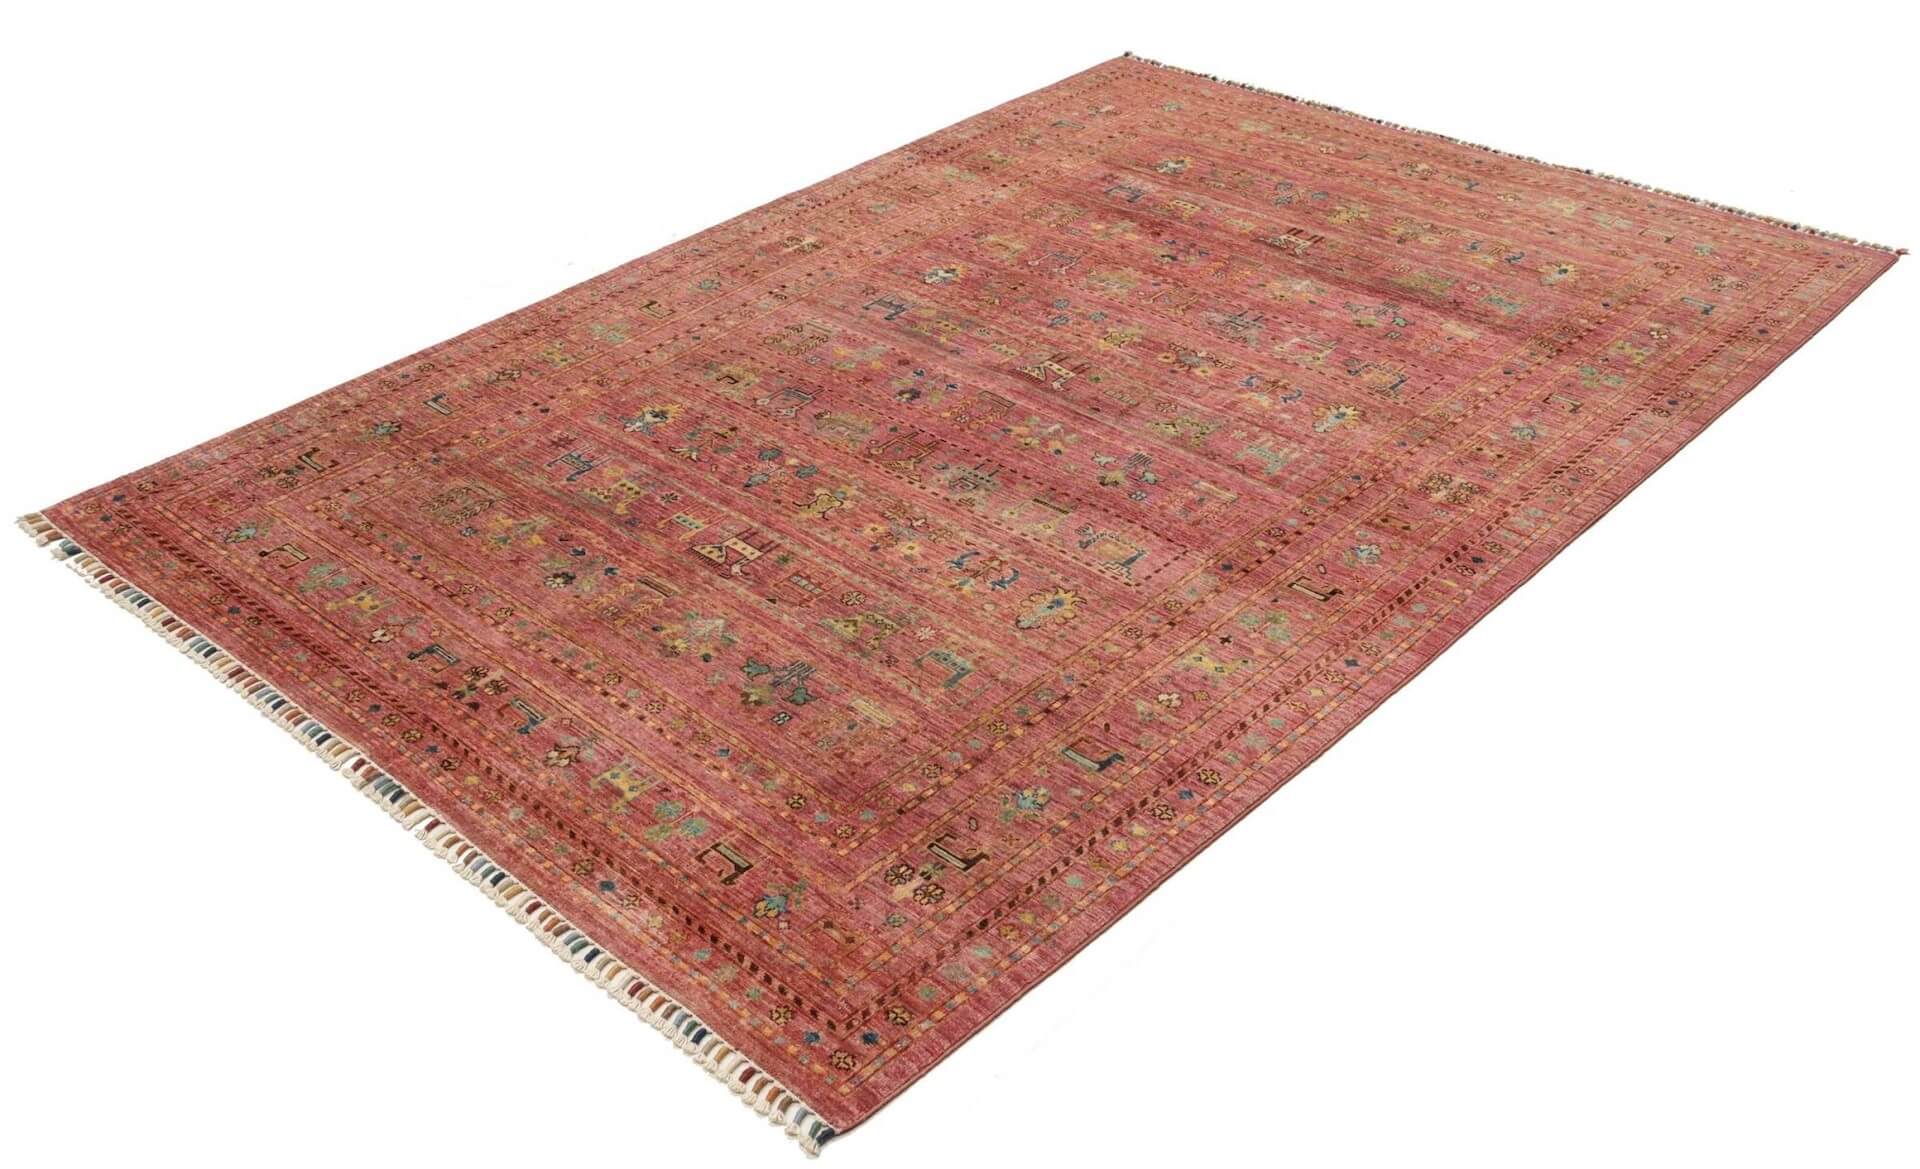 Afghanteppich Rubin Purpal, handgeknüpft , Schurwolle, purpal/mehrfarbig, 171x 243 cm, Schrägansicht